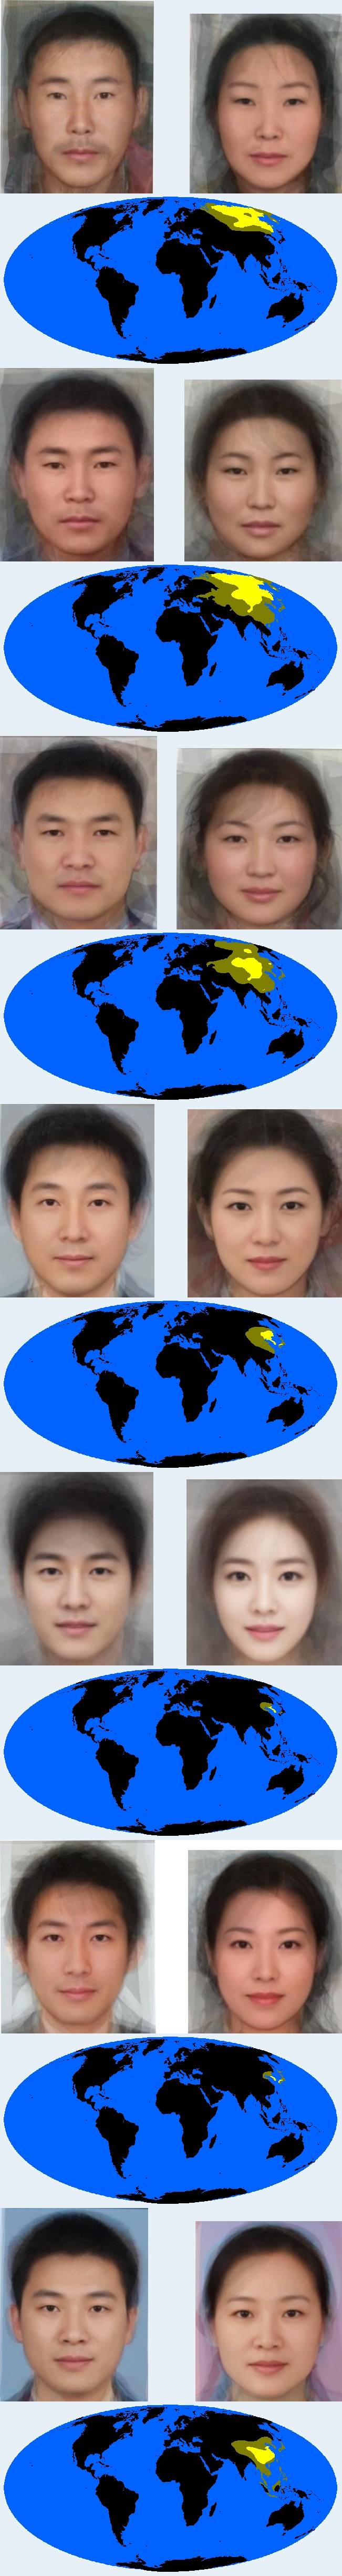 동아시아의 지역별 특징적 얼굴형태 모음